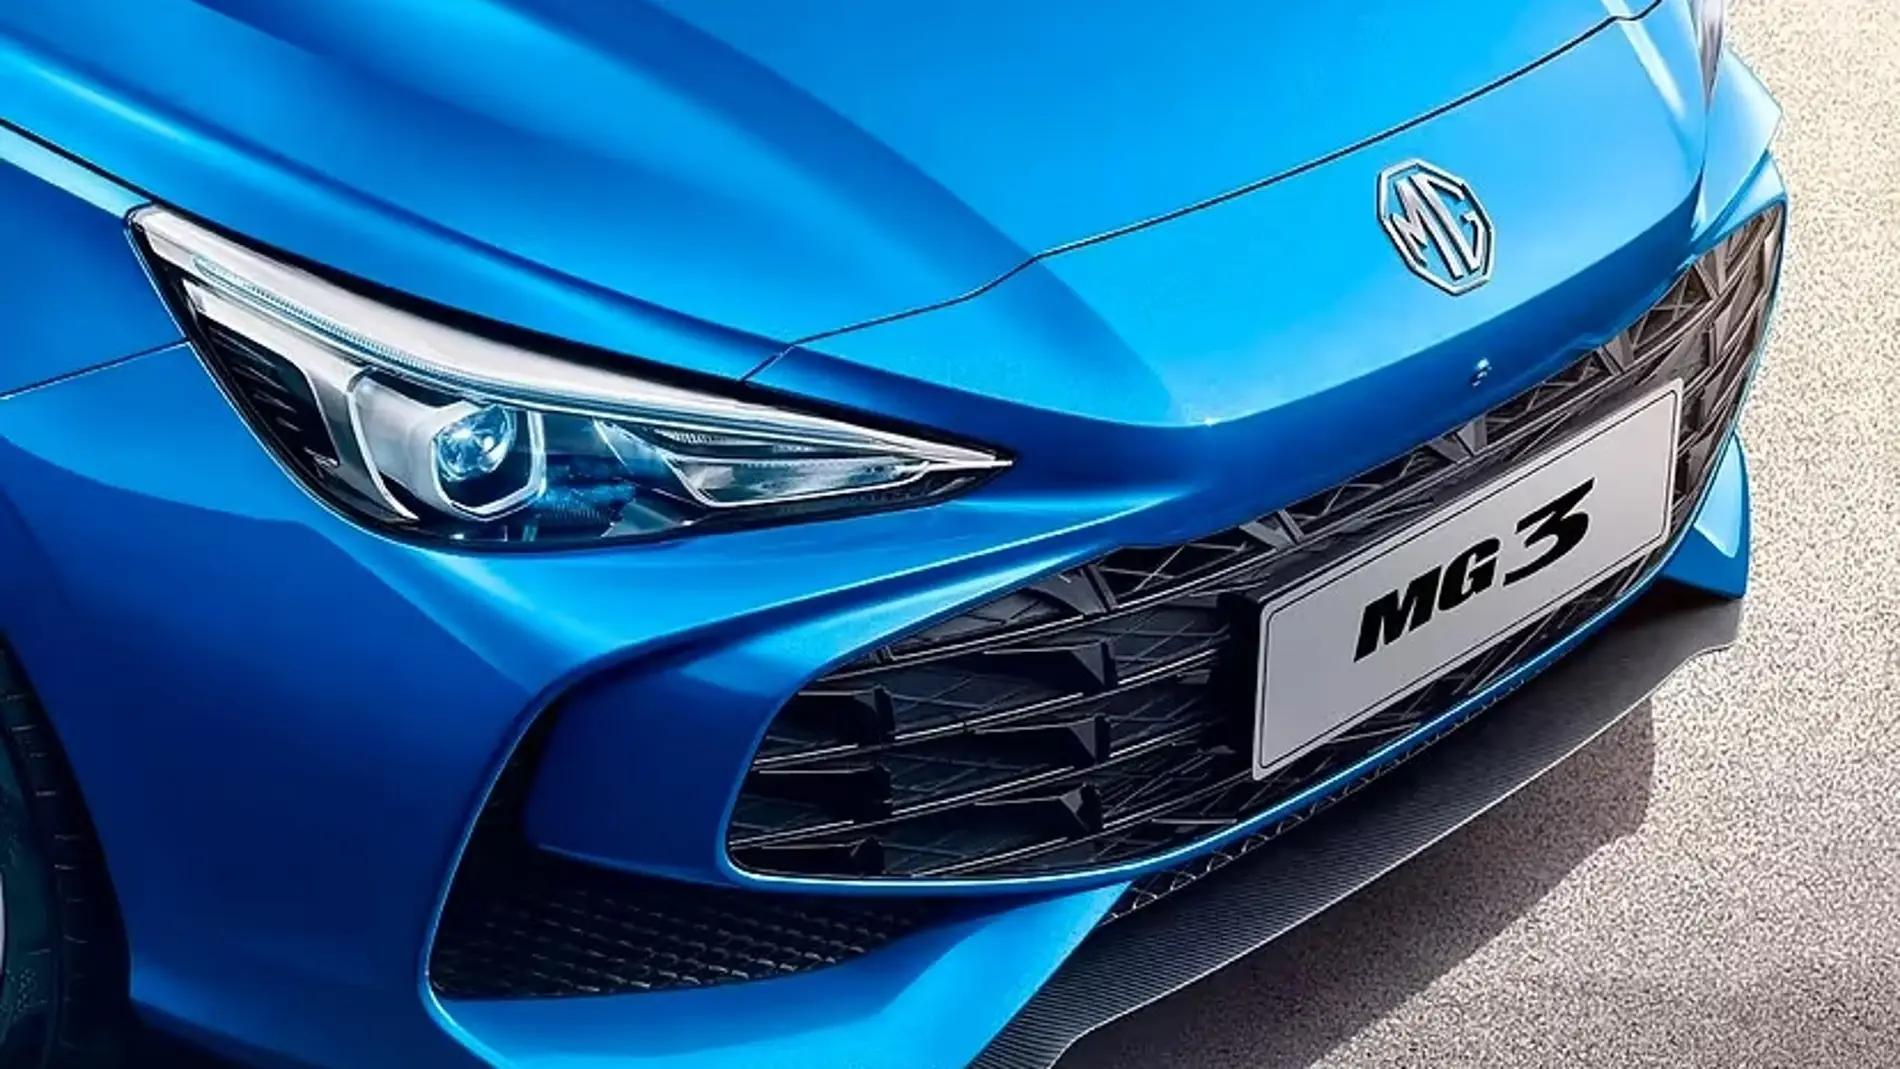 El nuevo MG3 Hybrid llegará a España en primavera con tecnología híbrida autorrecargable